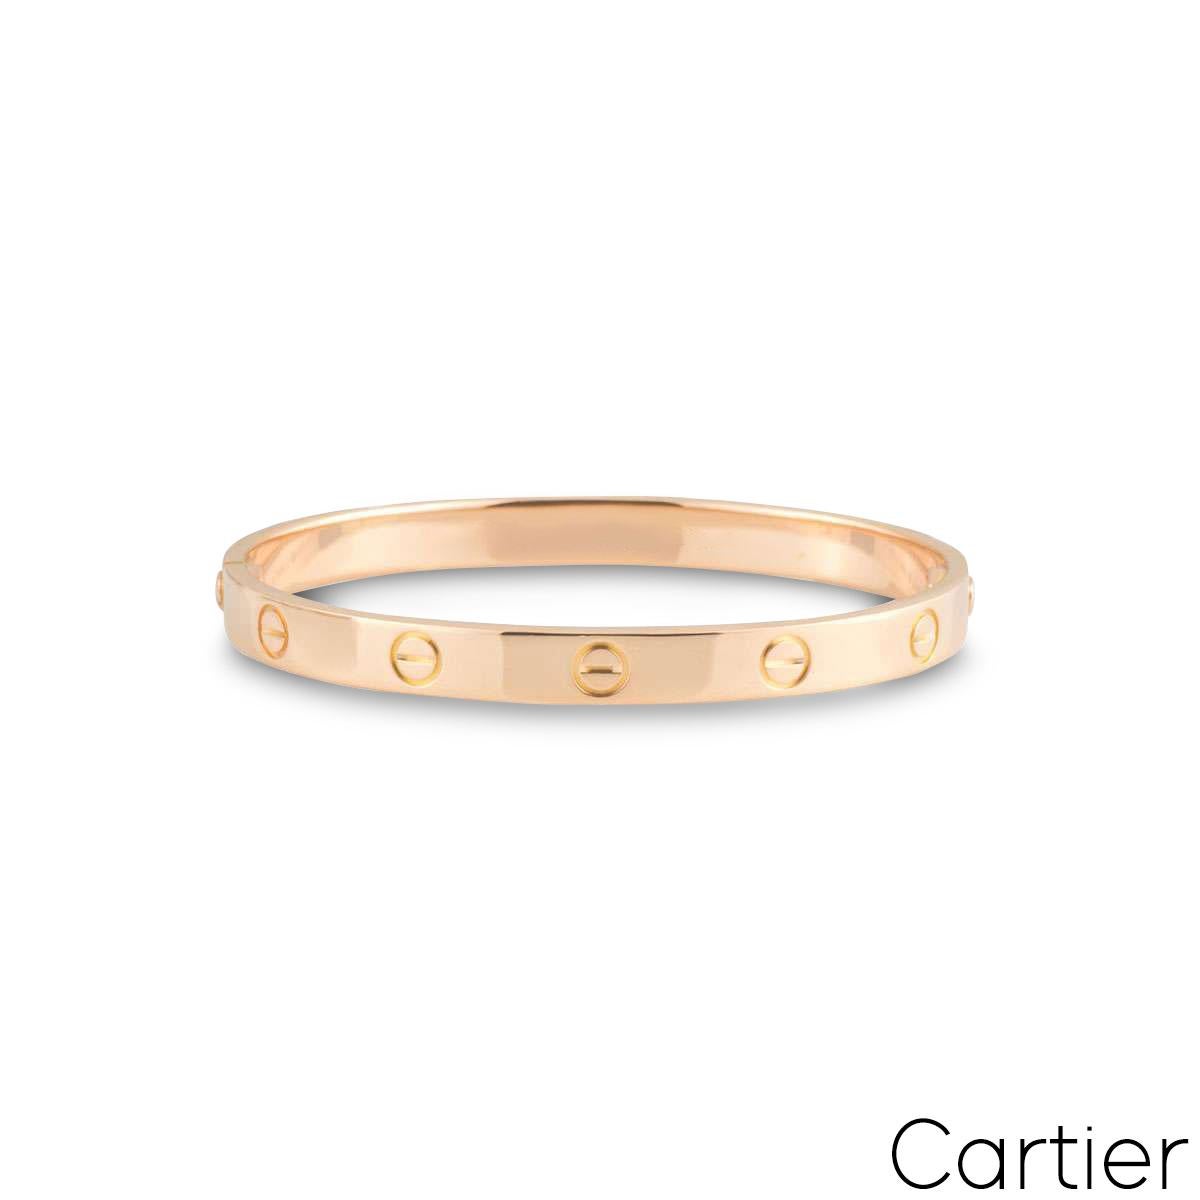 Ein ikonisches Armband aus 18 Karat Roségold von Cartier aus der Collection'S Love. Das Armband besteht aus den ikonischen Schraubenmotiven am äußeren Rand. Das Armband hat die Größe 17 und verfügt über das neue Schraubensystem mit einem